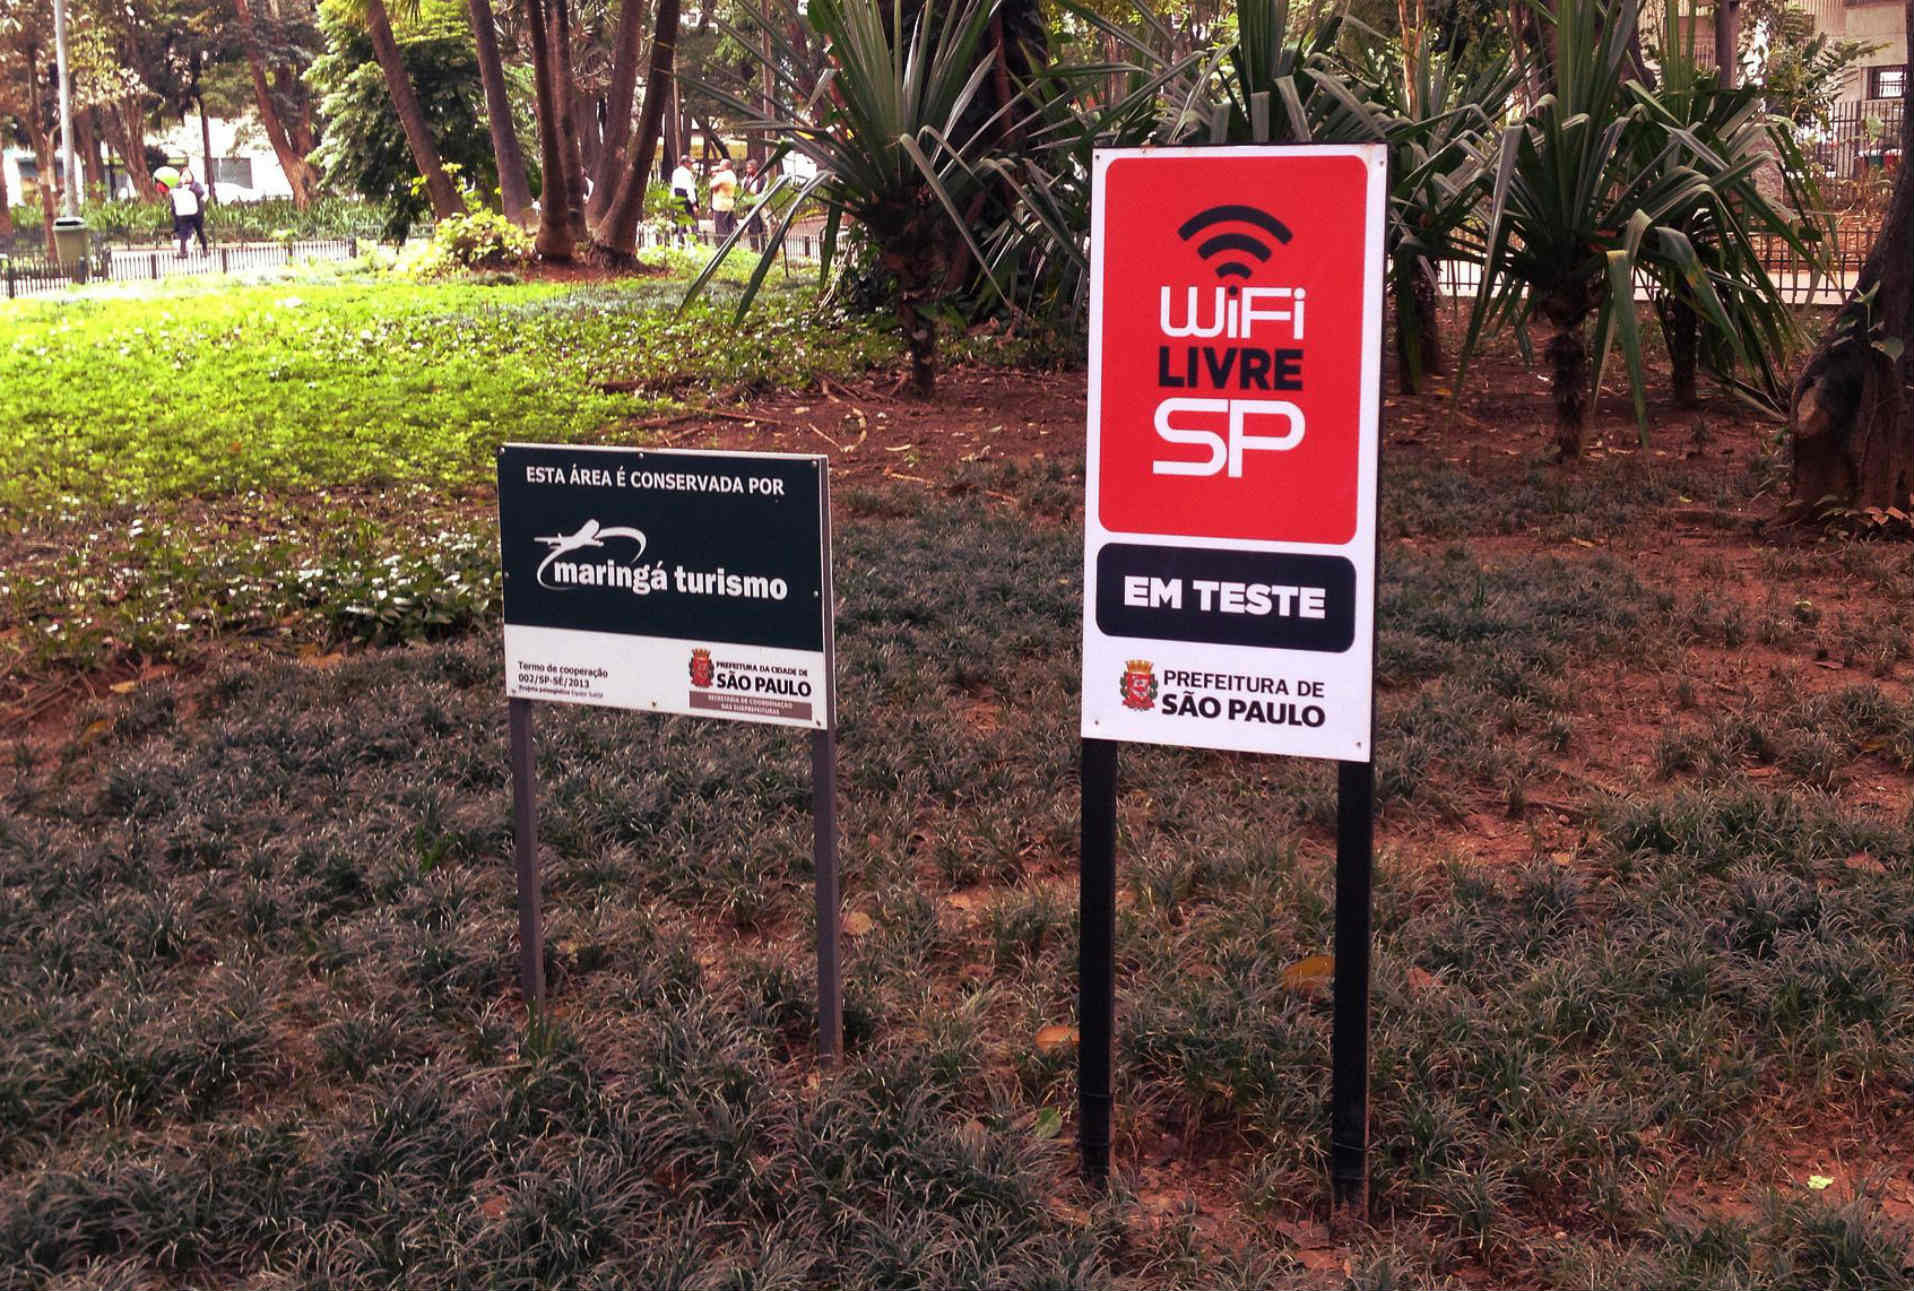 Wi-Fi Livre, la red pública de Sao Paulo, pondría en riesgo la privacidad de sus usuarios